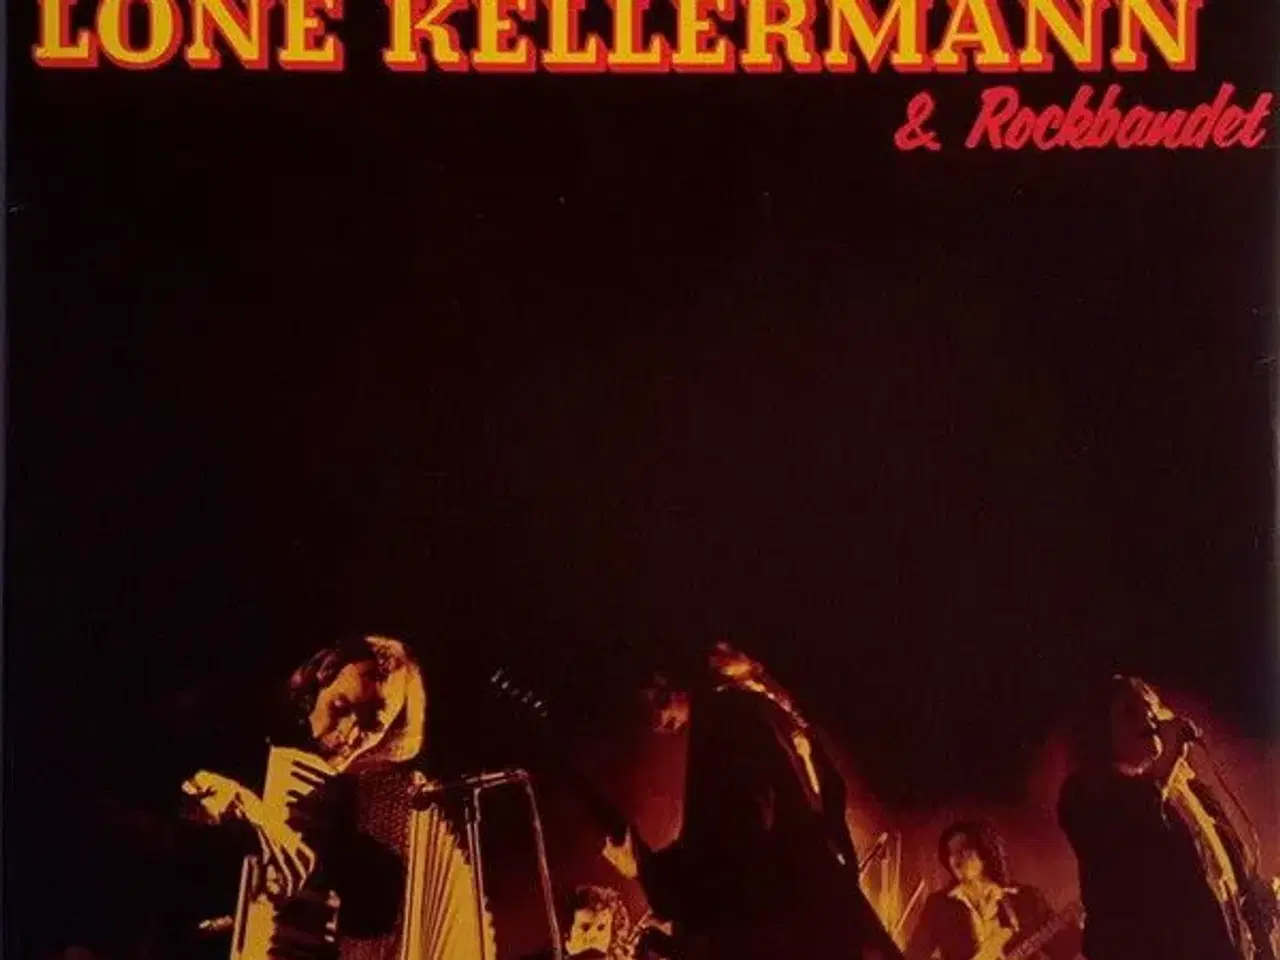 Billede 5 - Lone Kellermann & Rockbandet - Før Natte